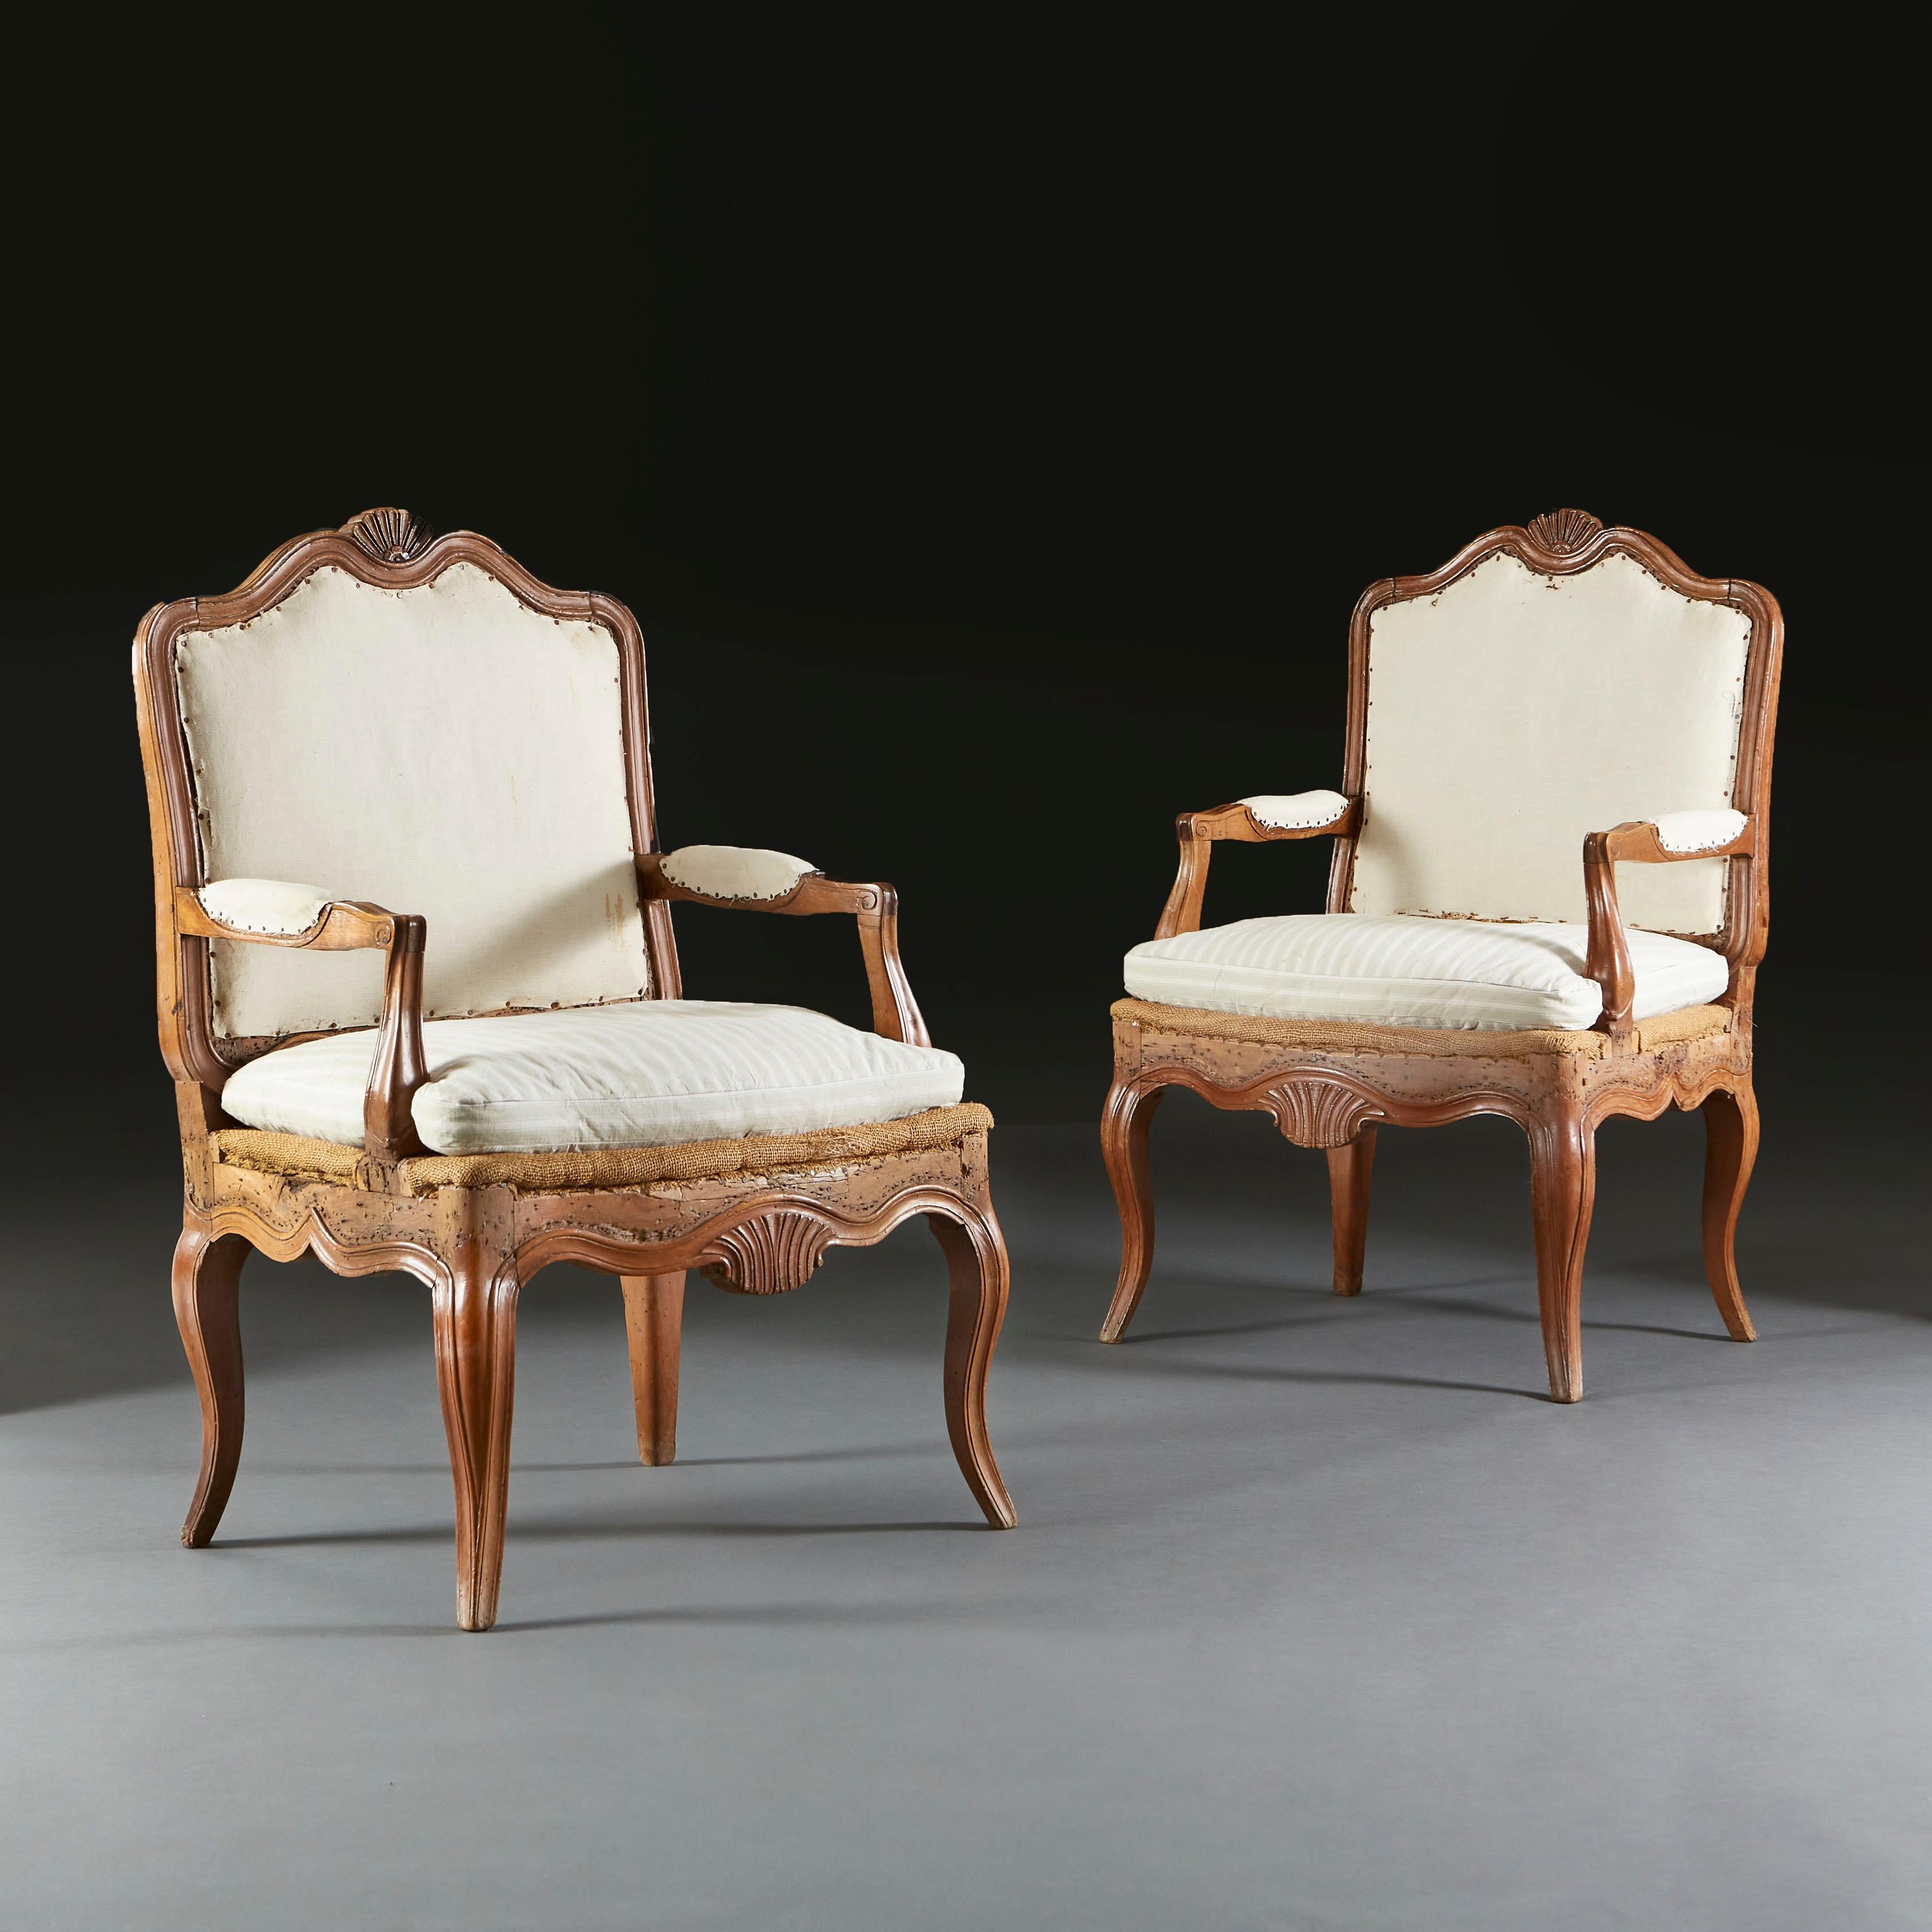 Ein Paar offene Nussbaumsessel aus dem frühen neunzehnten Jahrhundert mit geschnitzten Muscheln an der hinteren Sitzschiene, gepolsterten Sitzen, die alle auf vier Cabriole-Beinen ruhen.